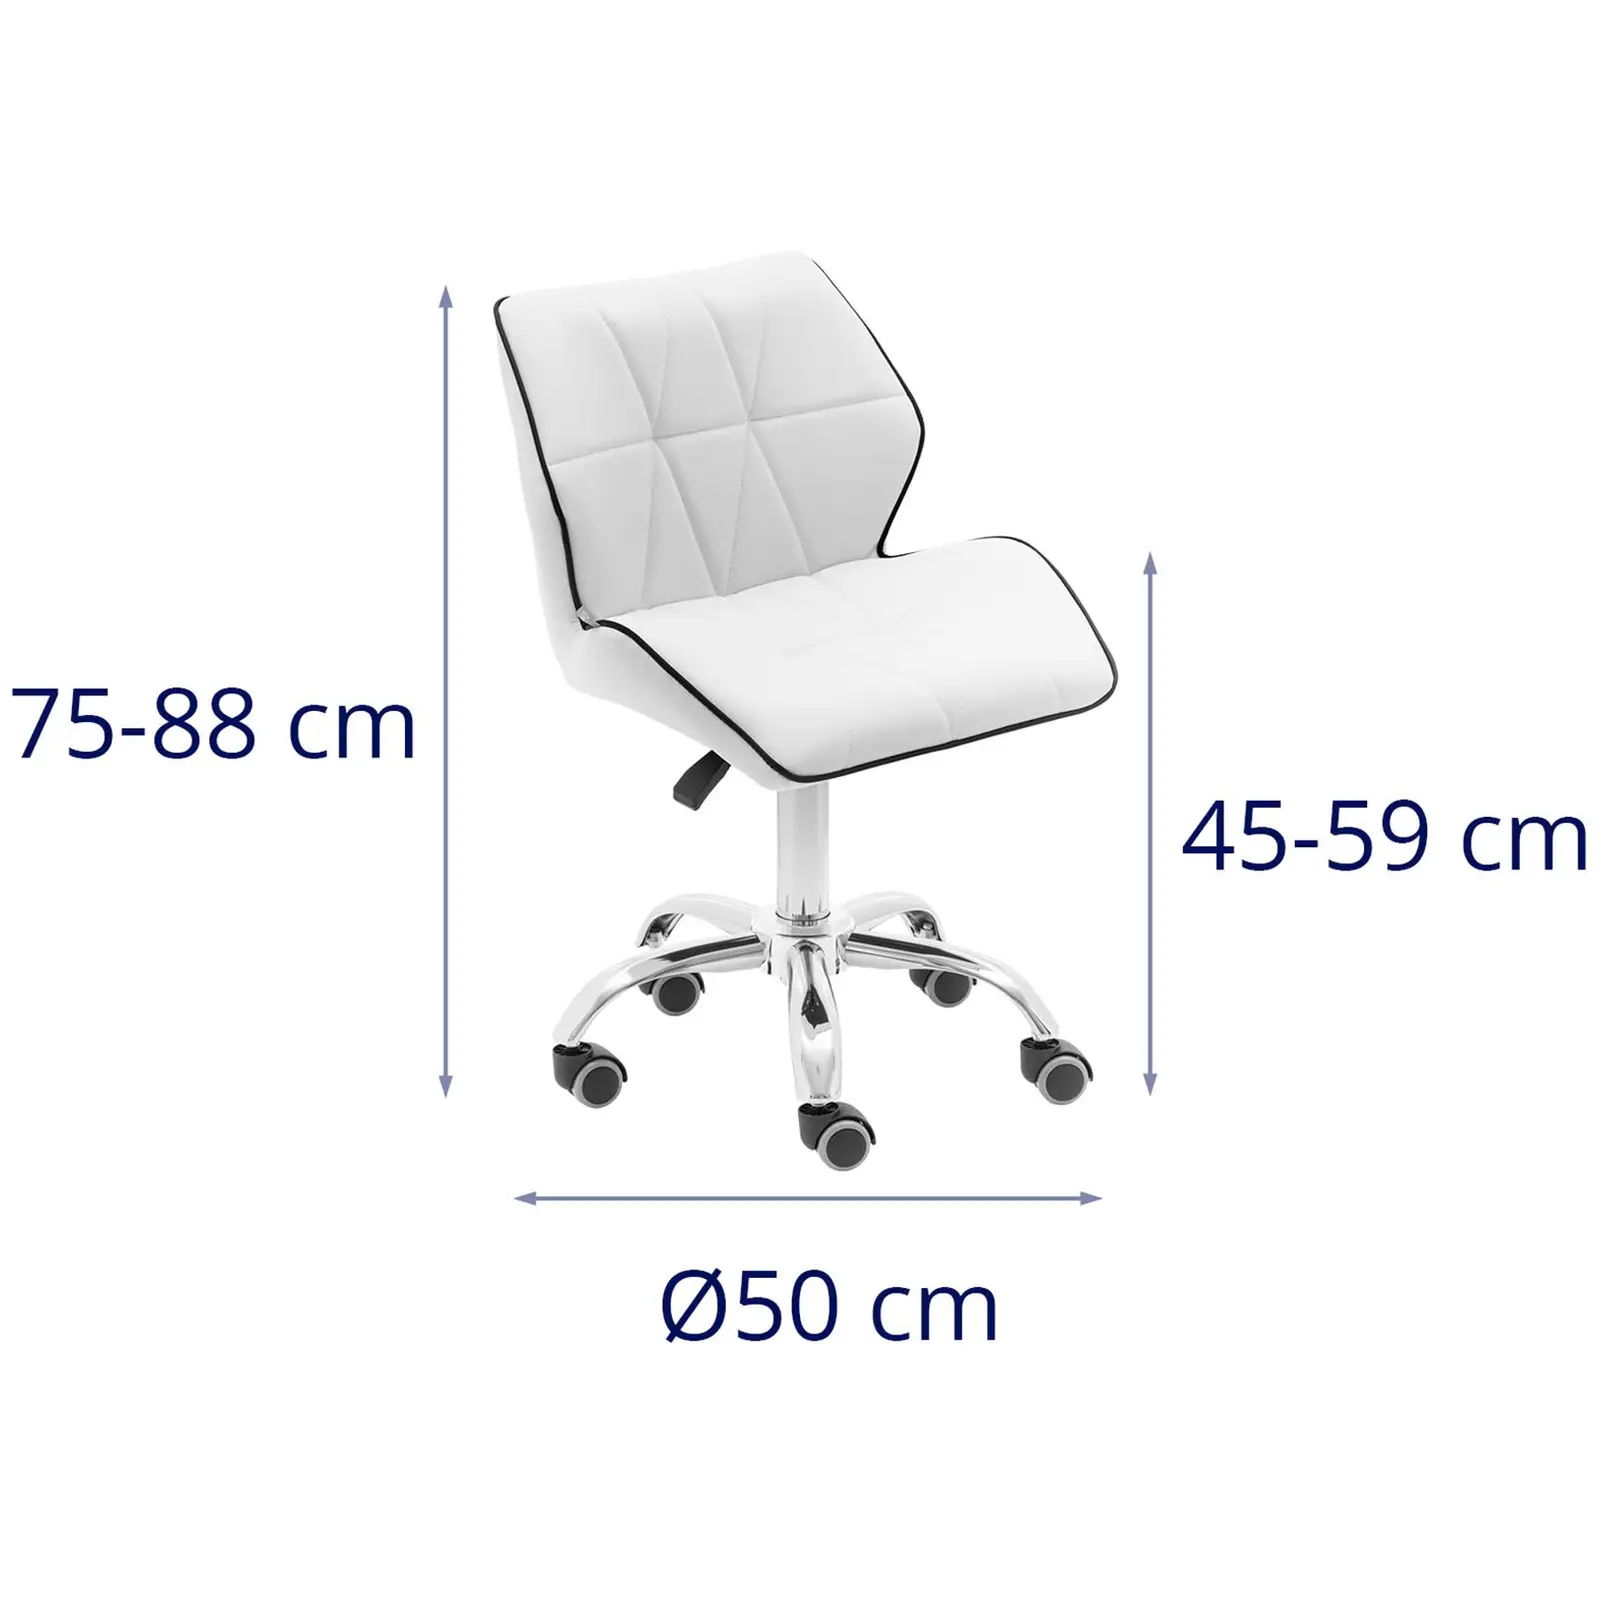 Gurulós szék háttámlával - 45–59 cm - 150 kg - fehér